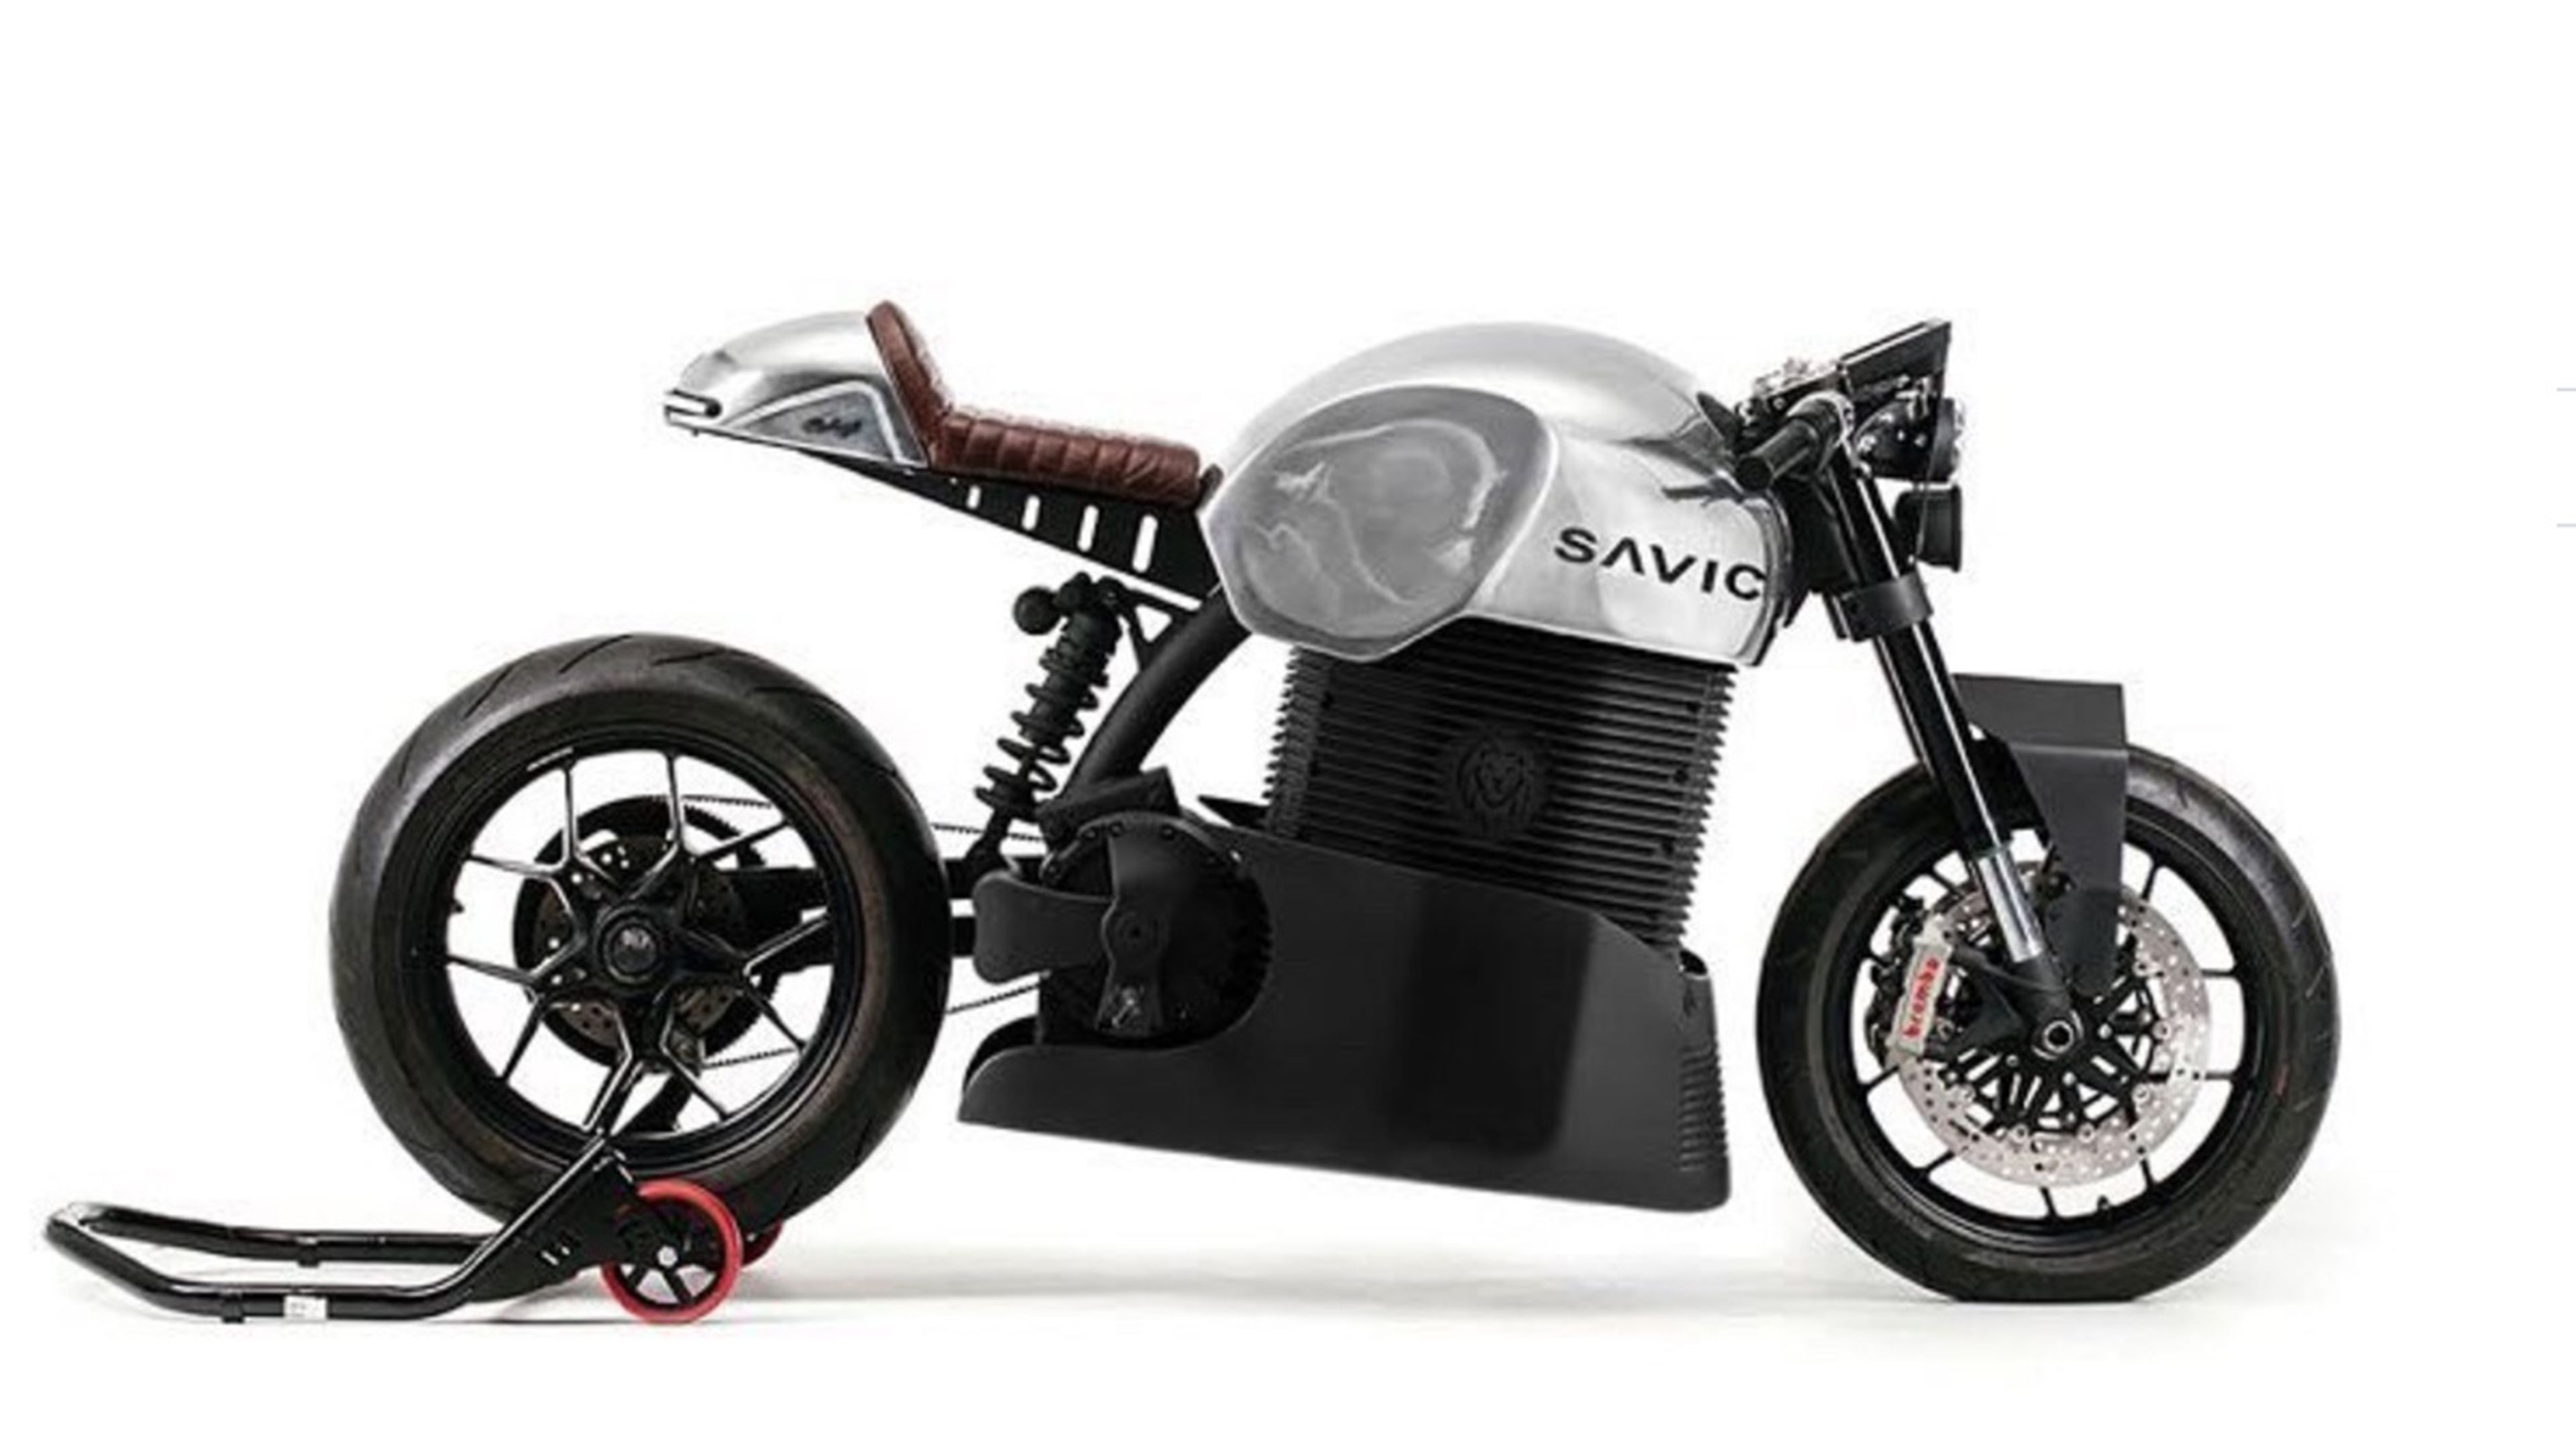 Savic Motorcycle